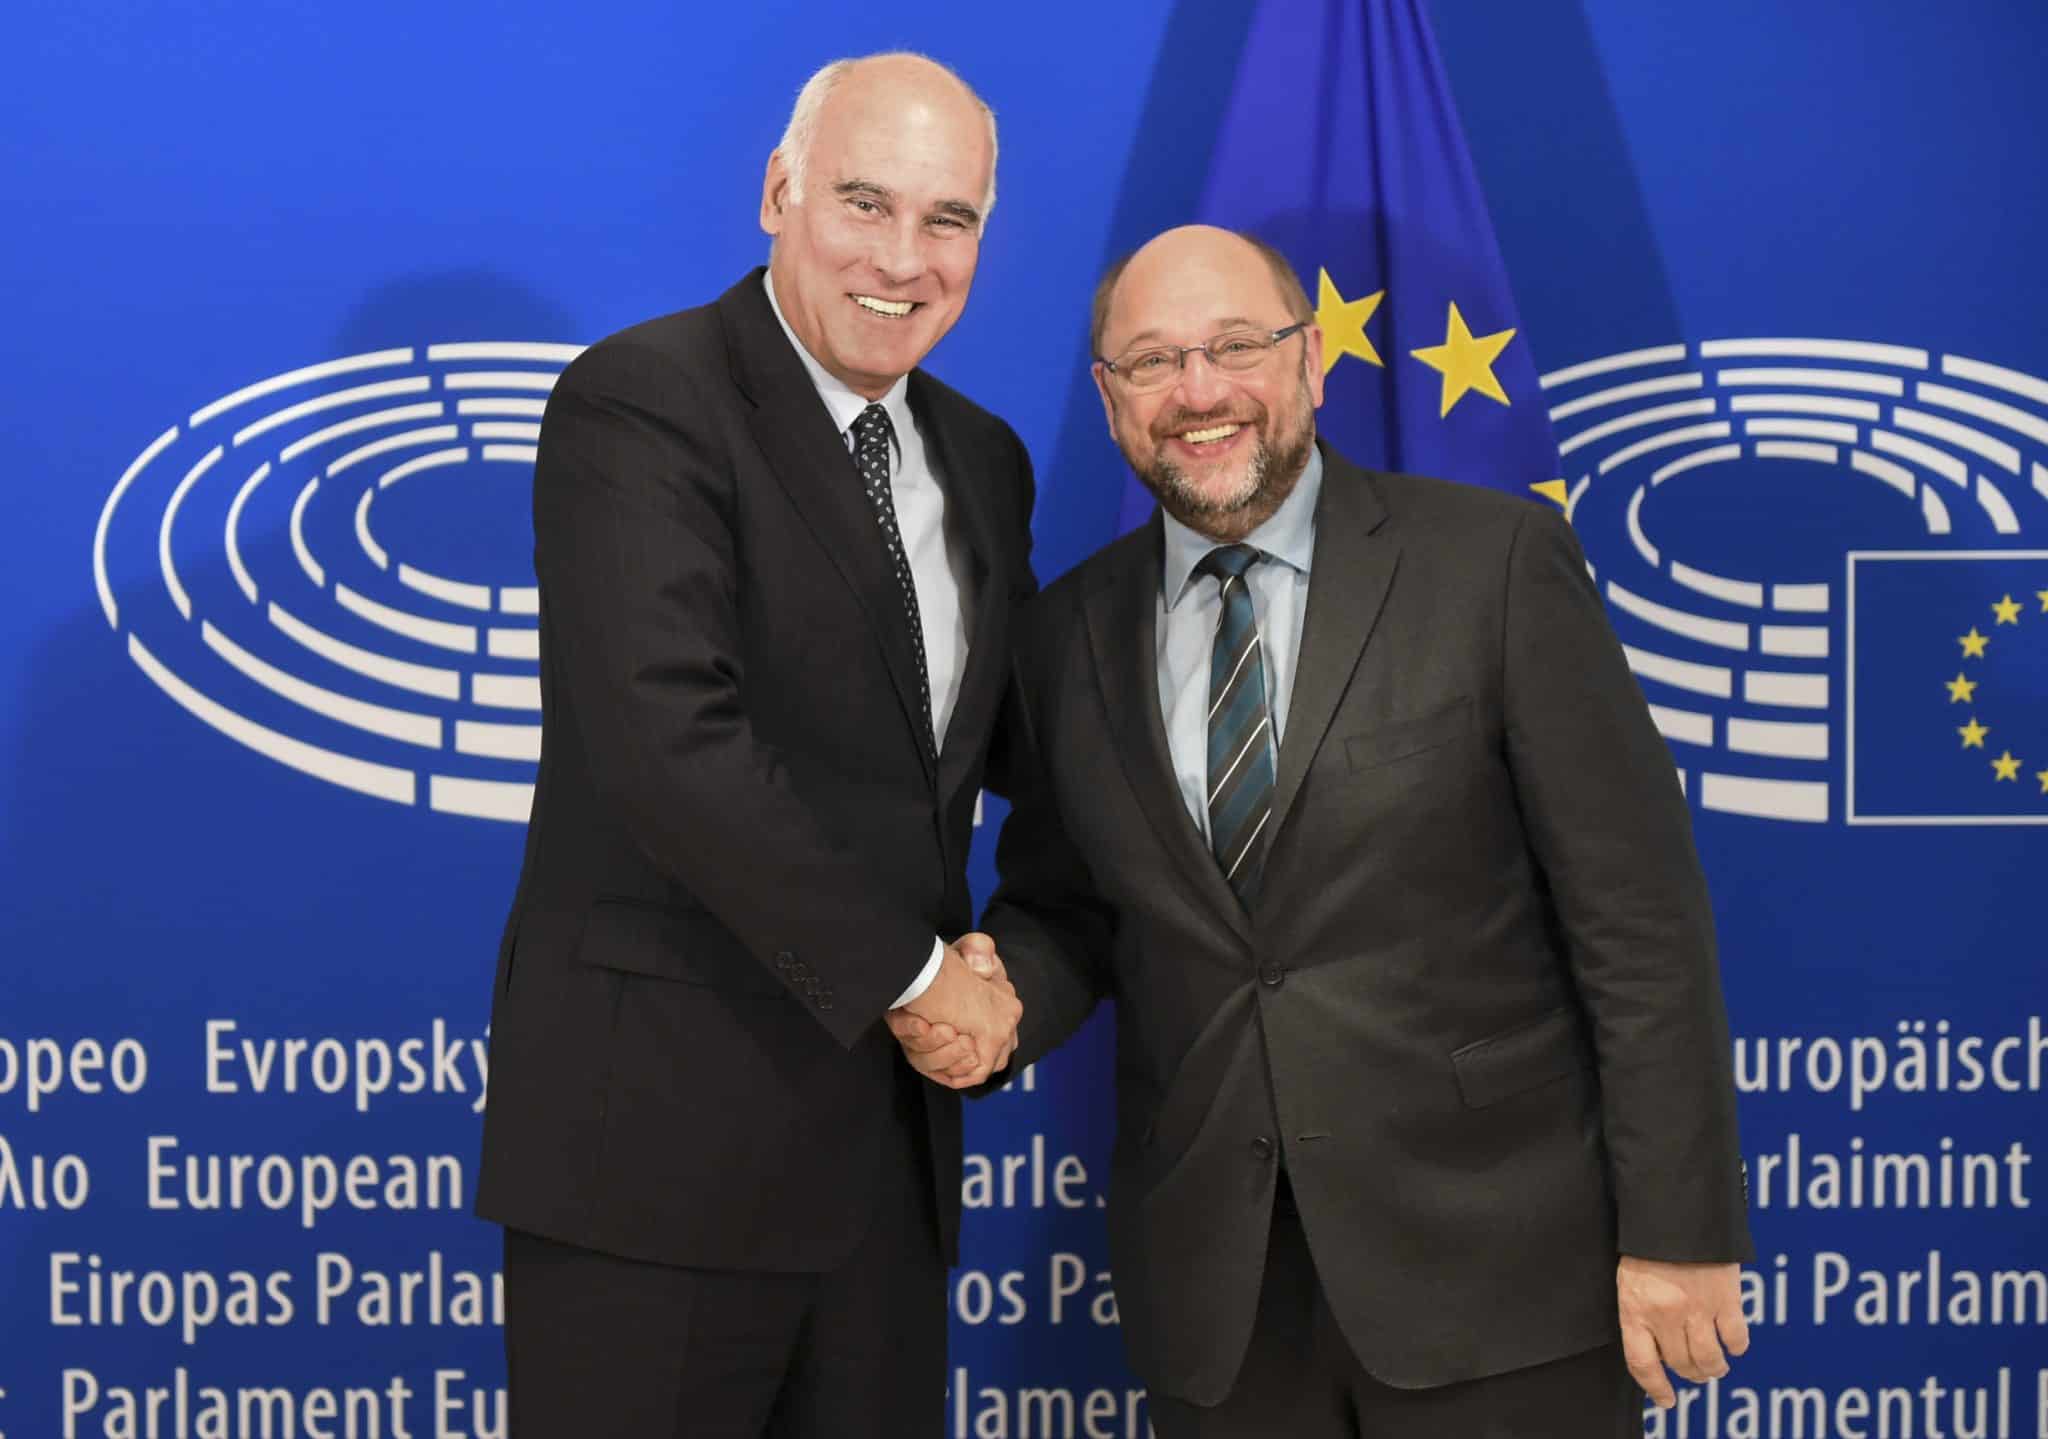 João Vale de Almeida with former European Parliament president Martin Schulz